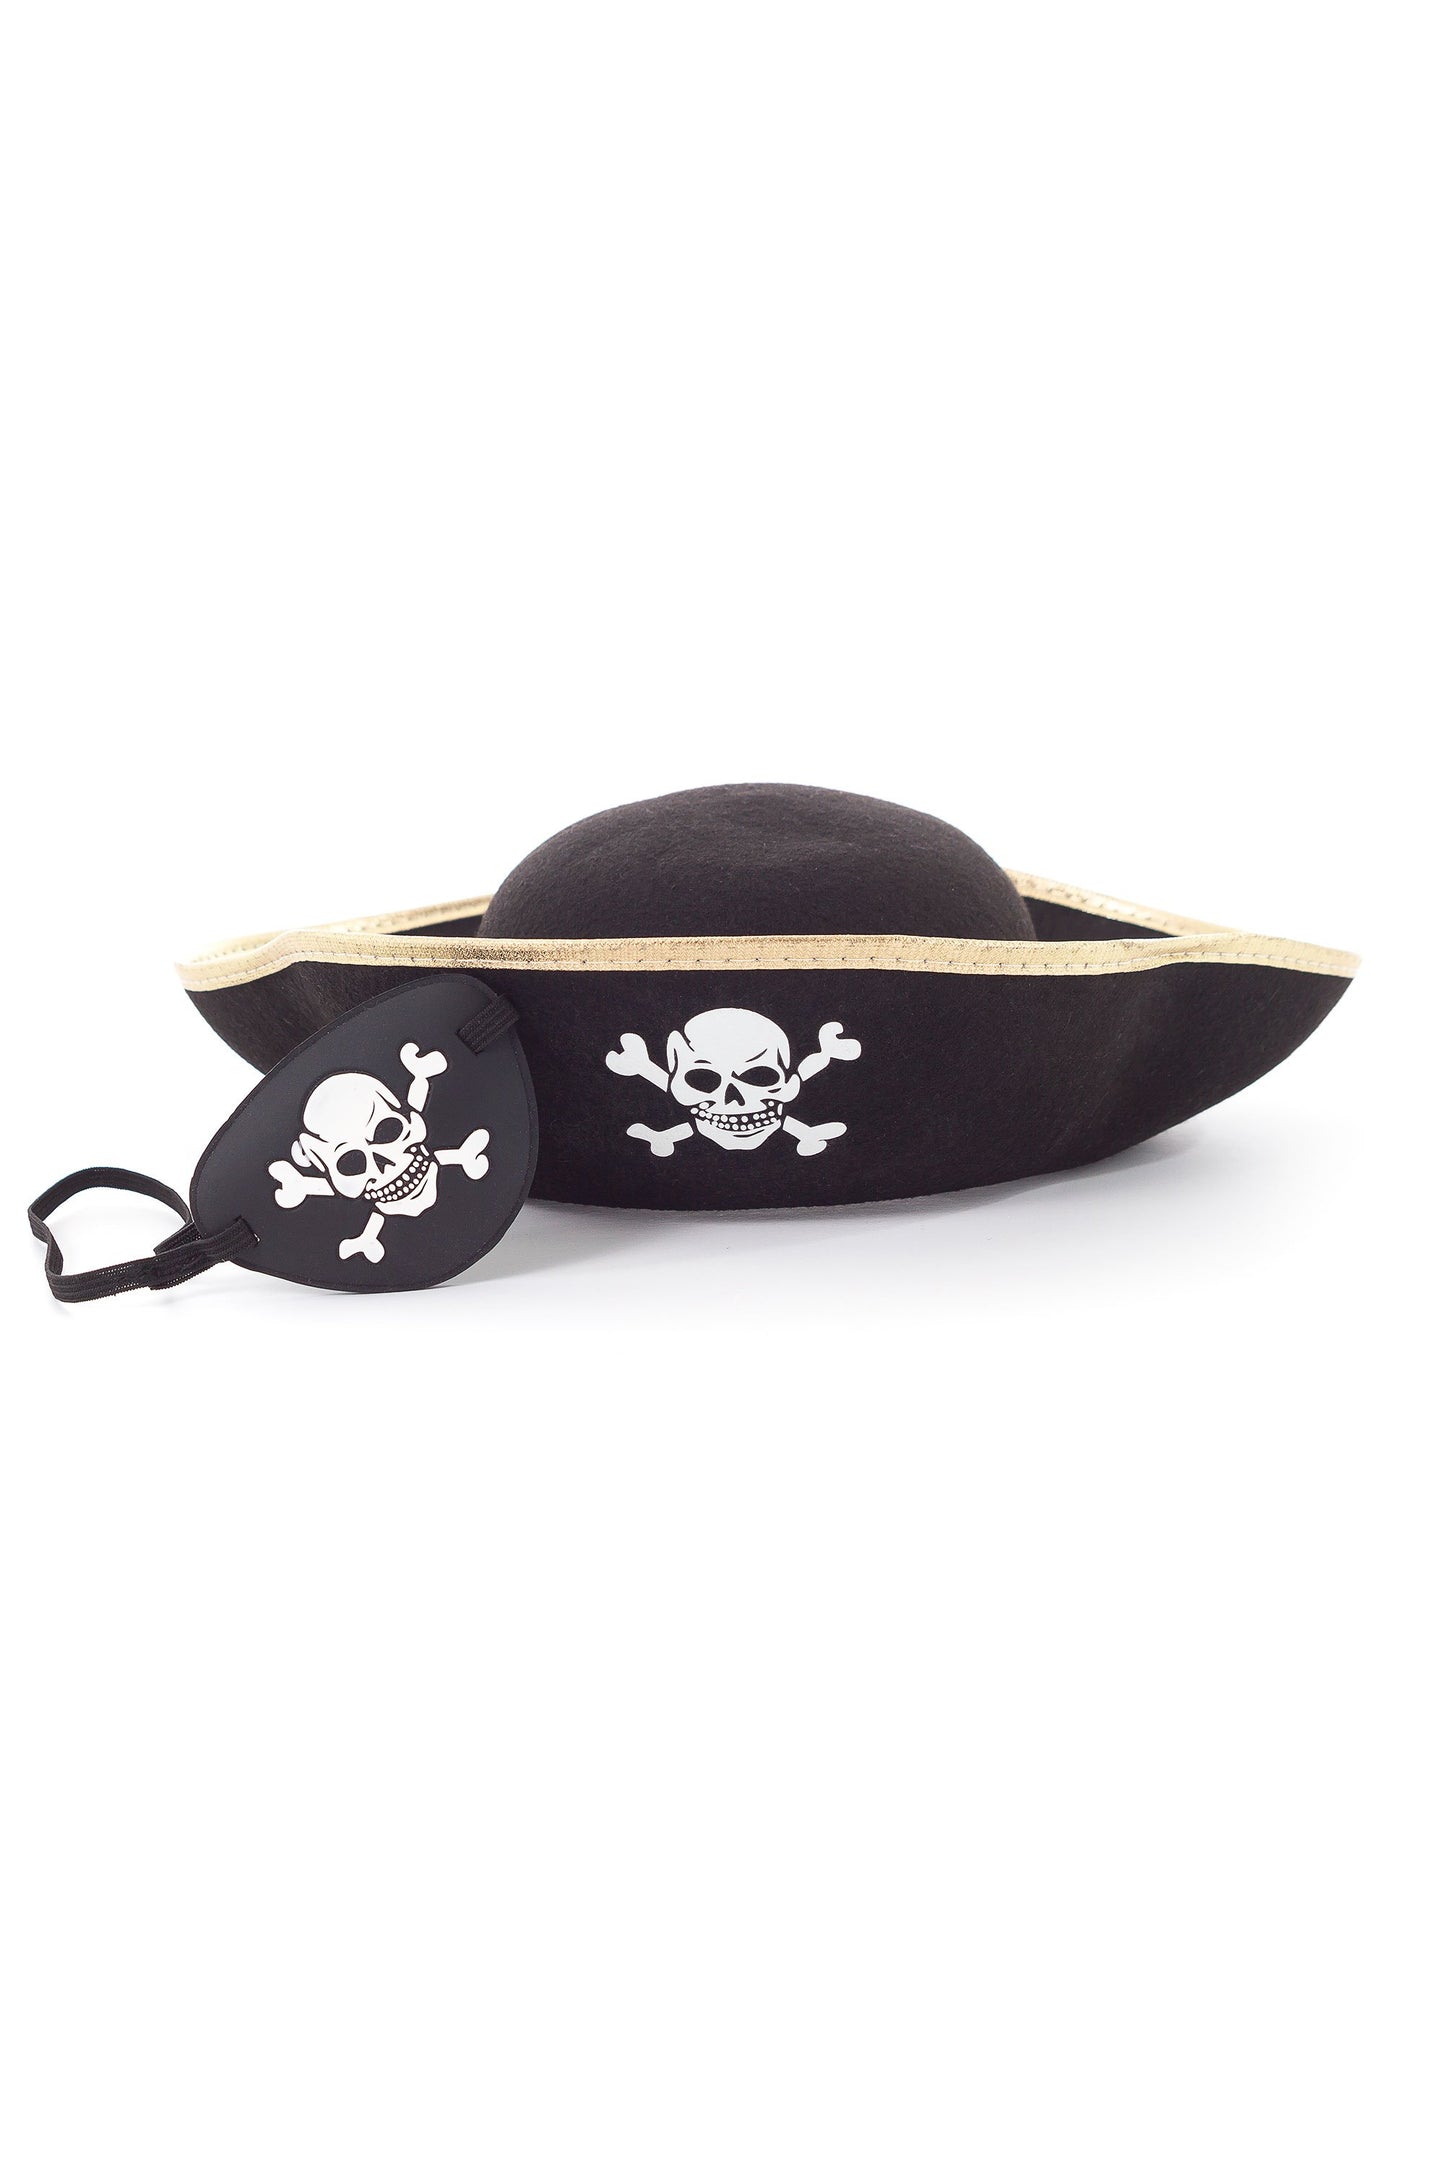 Pirate Cape & Mask